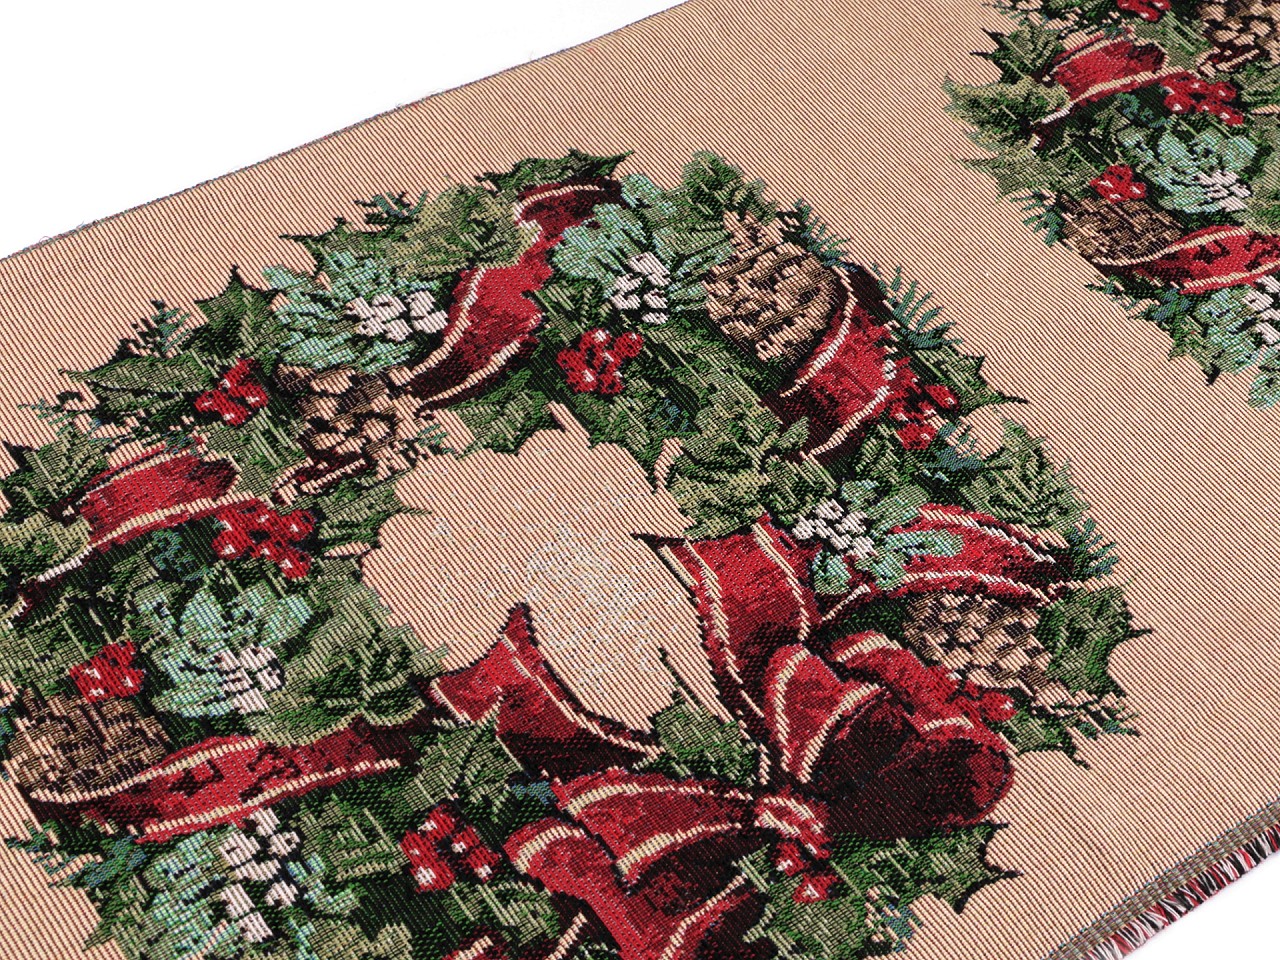 Textillux.sk - produkt Gobelín vianočný veniec - panel 38x40 cm